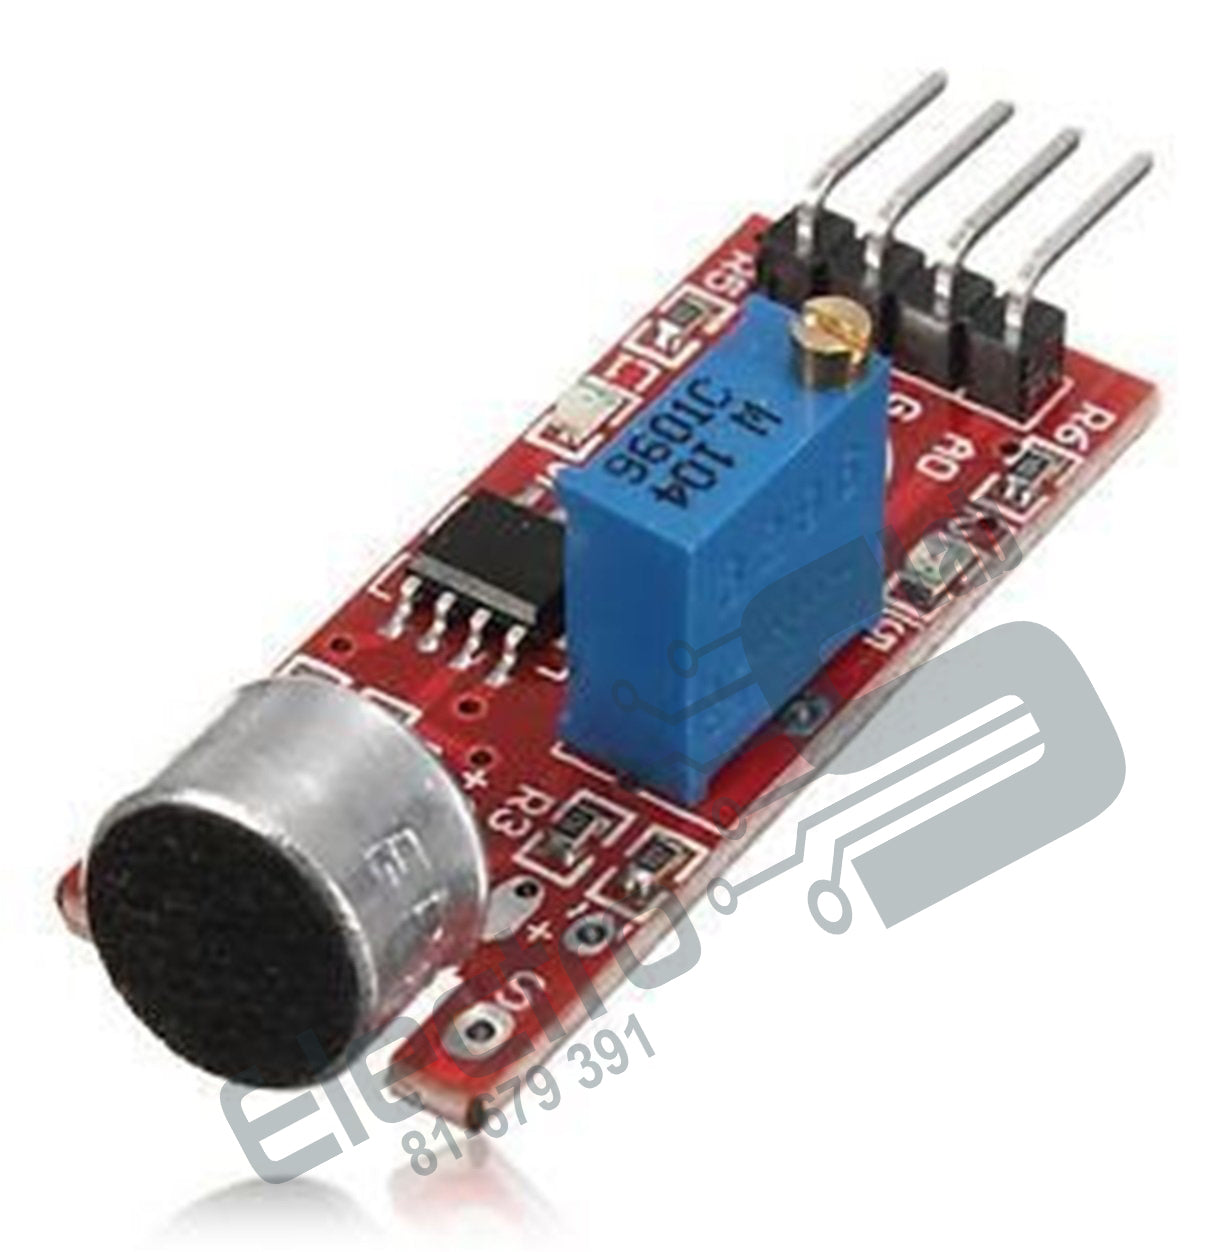 Sound Sensor Module KY-038